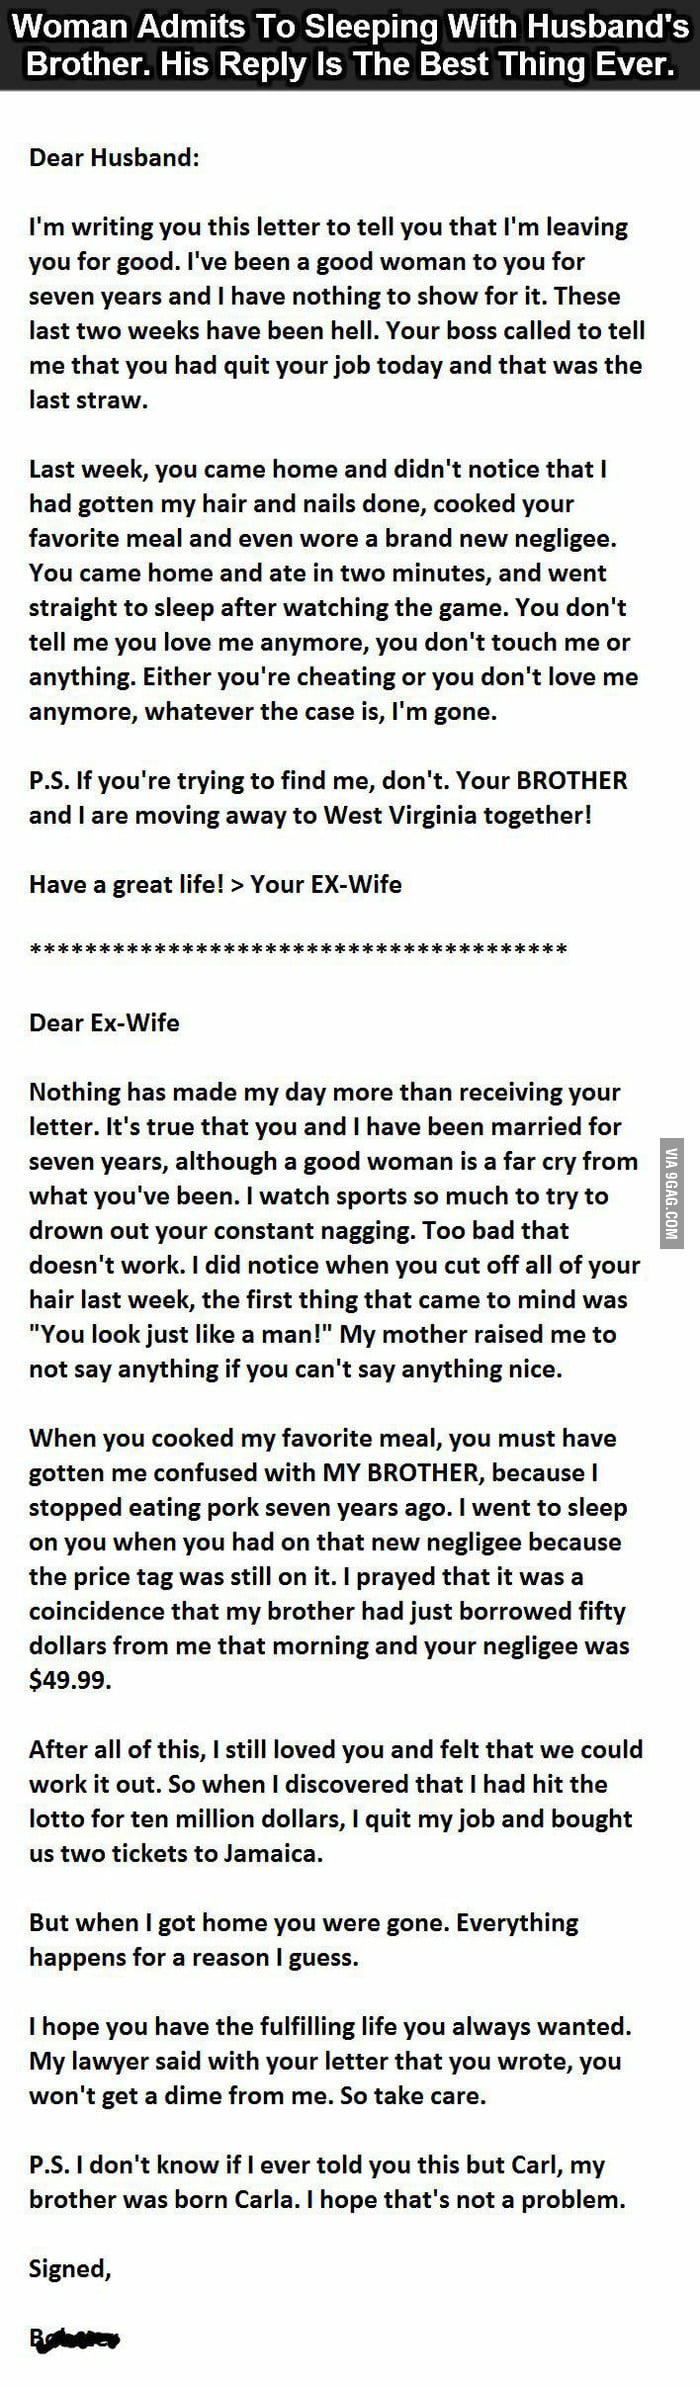 Best divorce letter ever - 25GAG